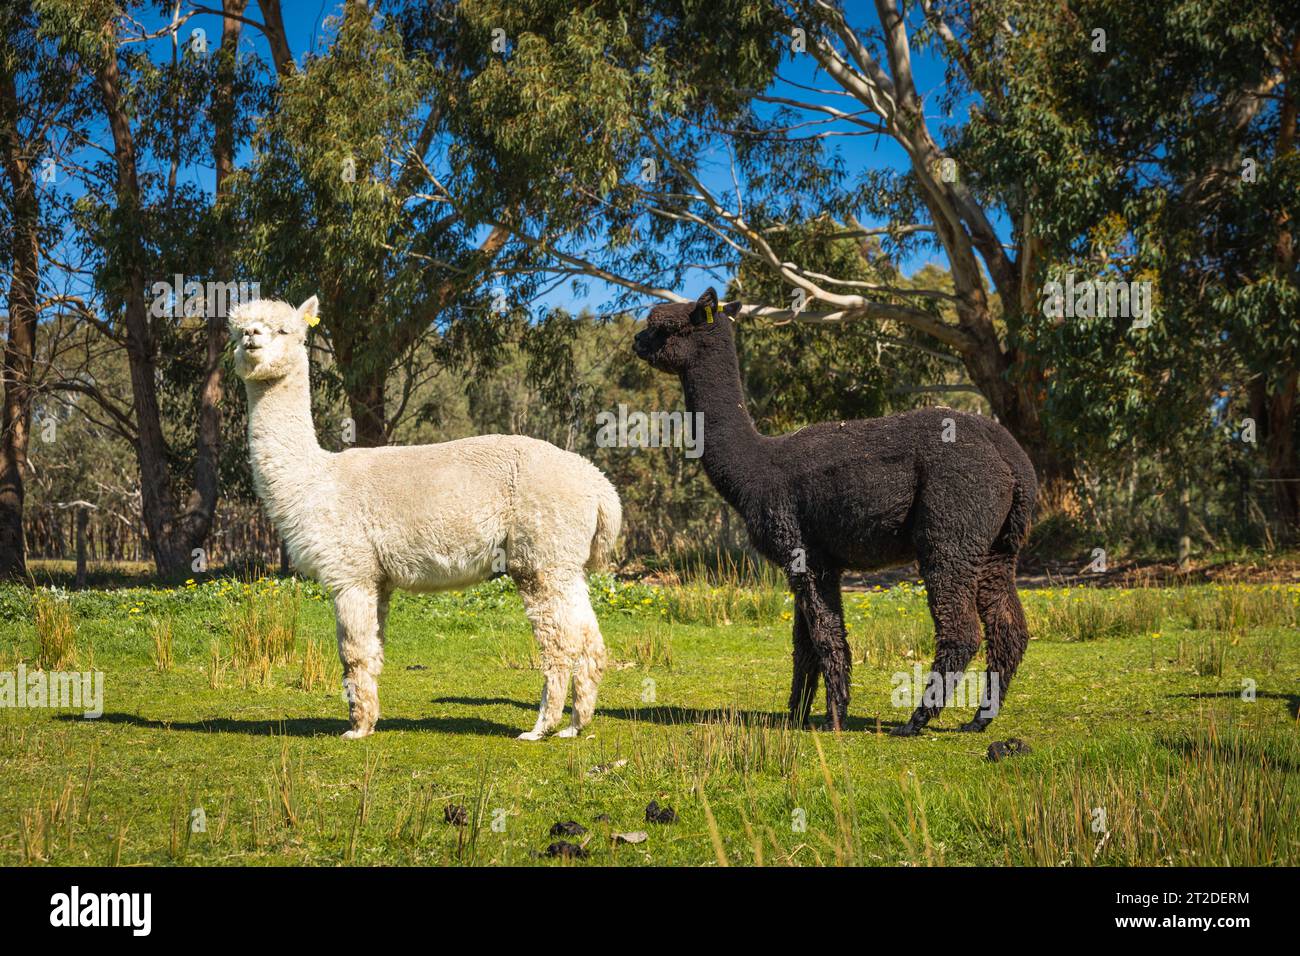 Gli Alpacas di Adelaide, Australia meridionale, sono incantevoli e accoglienti. Gli amanti degli animali raccolgono anche Alpaca come loro animale domestico. Foto Stock